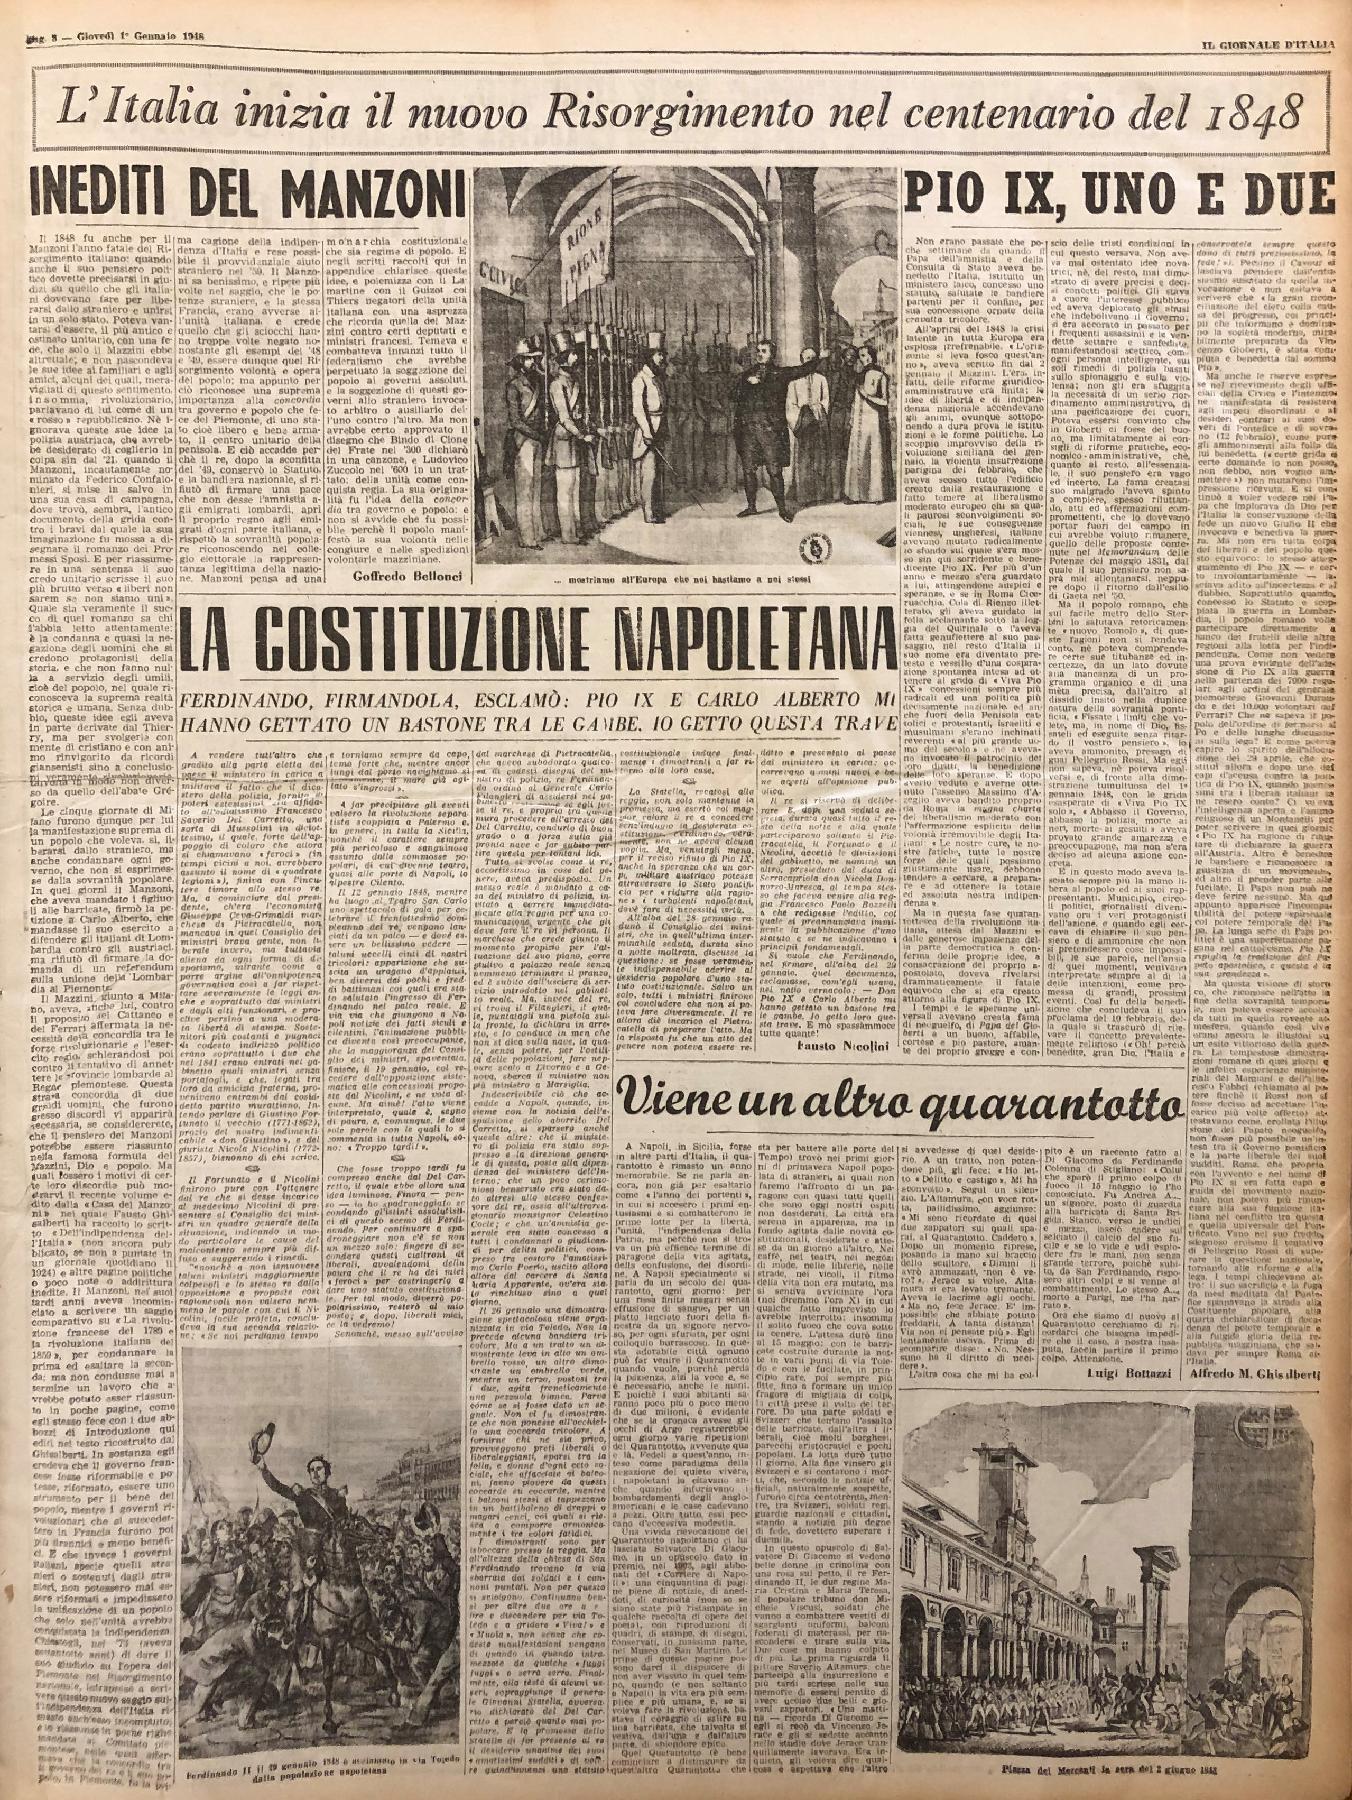 1° gennaio 1948 - Pagina del quotidiano "Il Giornale d'Italia".